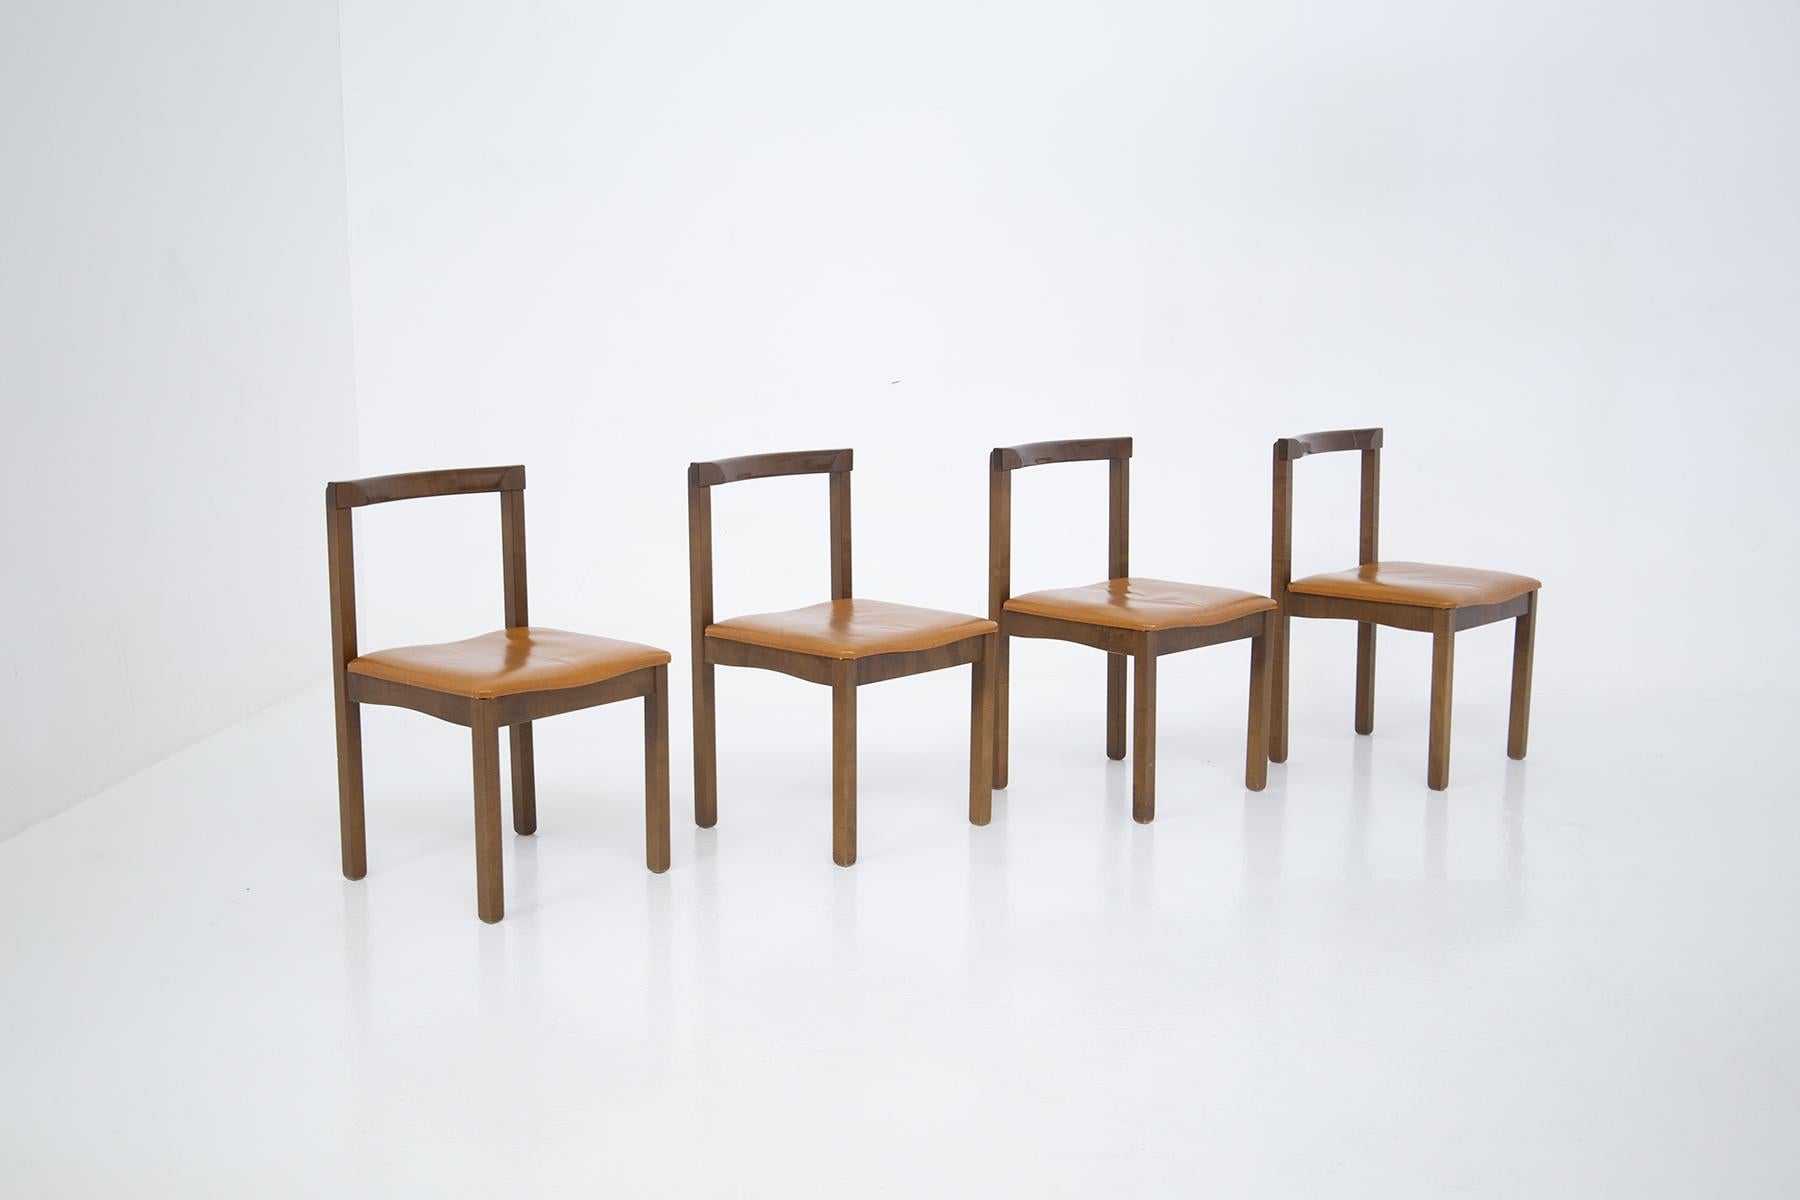 Satz von vier Stühlen von Vittorio Introini für Manifattura Sormani 1950er Jahre. Die Stühle sind aus Holz für das Gestell gefertigt und haben eine polierte Oberfläche. Der Sitz ist mit dem originalen braunen Leder der damaligen Zeit bezogen. Das